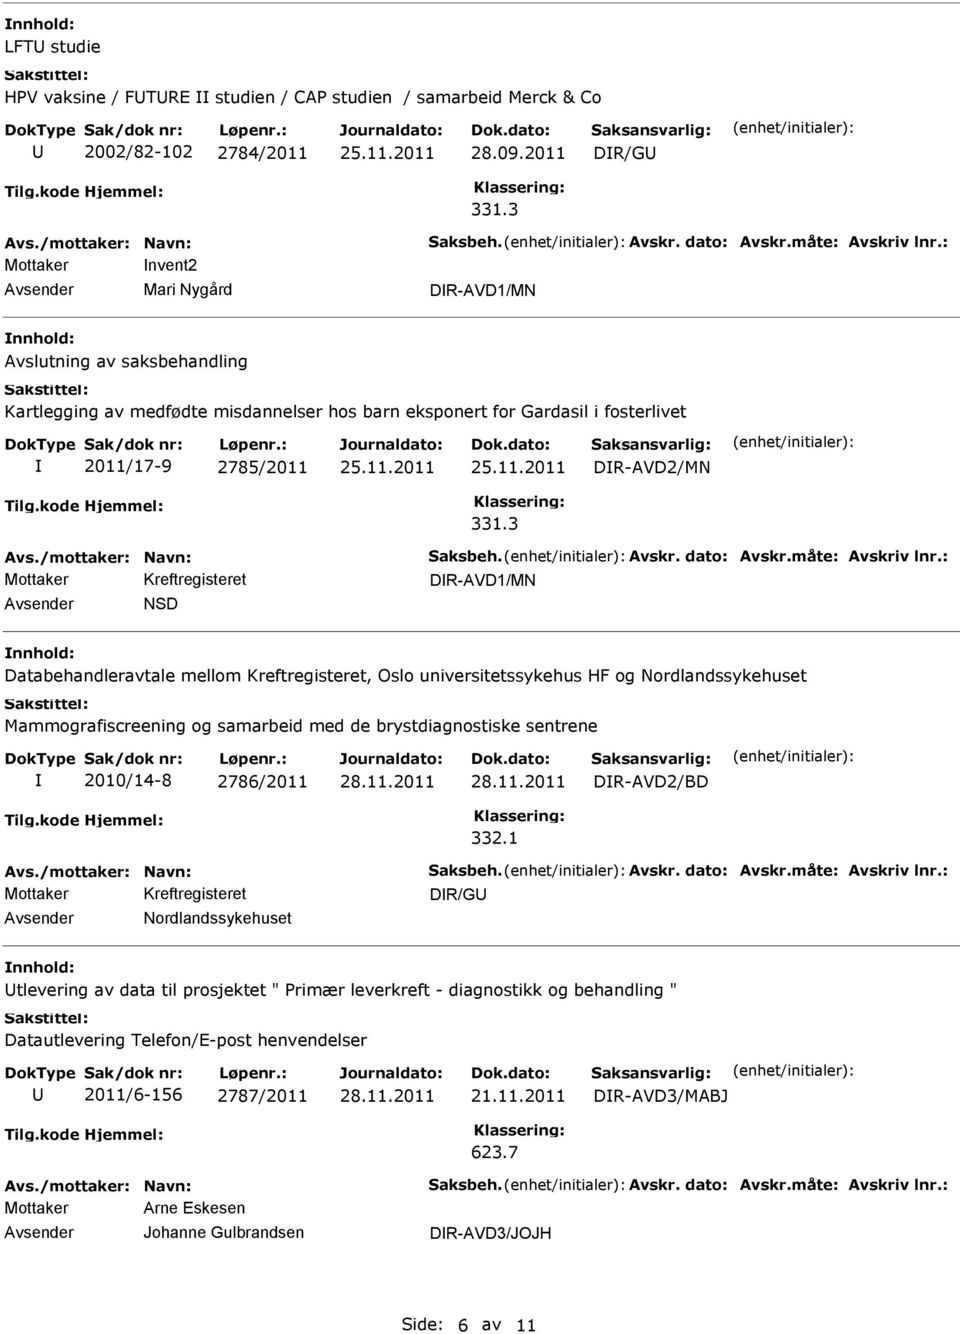 3 DR-AVD1/MN NSD Databehandleravtale mellom Kreftregisteret, Oslo universitetssykehus HF og Nordlandssykehuset Mammografiscreening og samarbeid med de brystdiagnostiske sentrene 2010/14-8 2786/2011